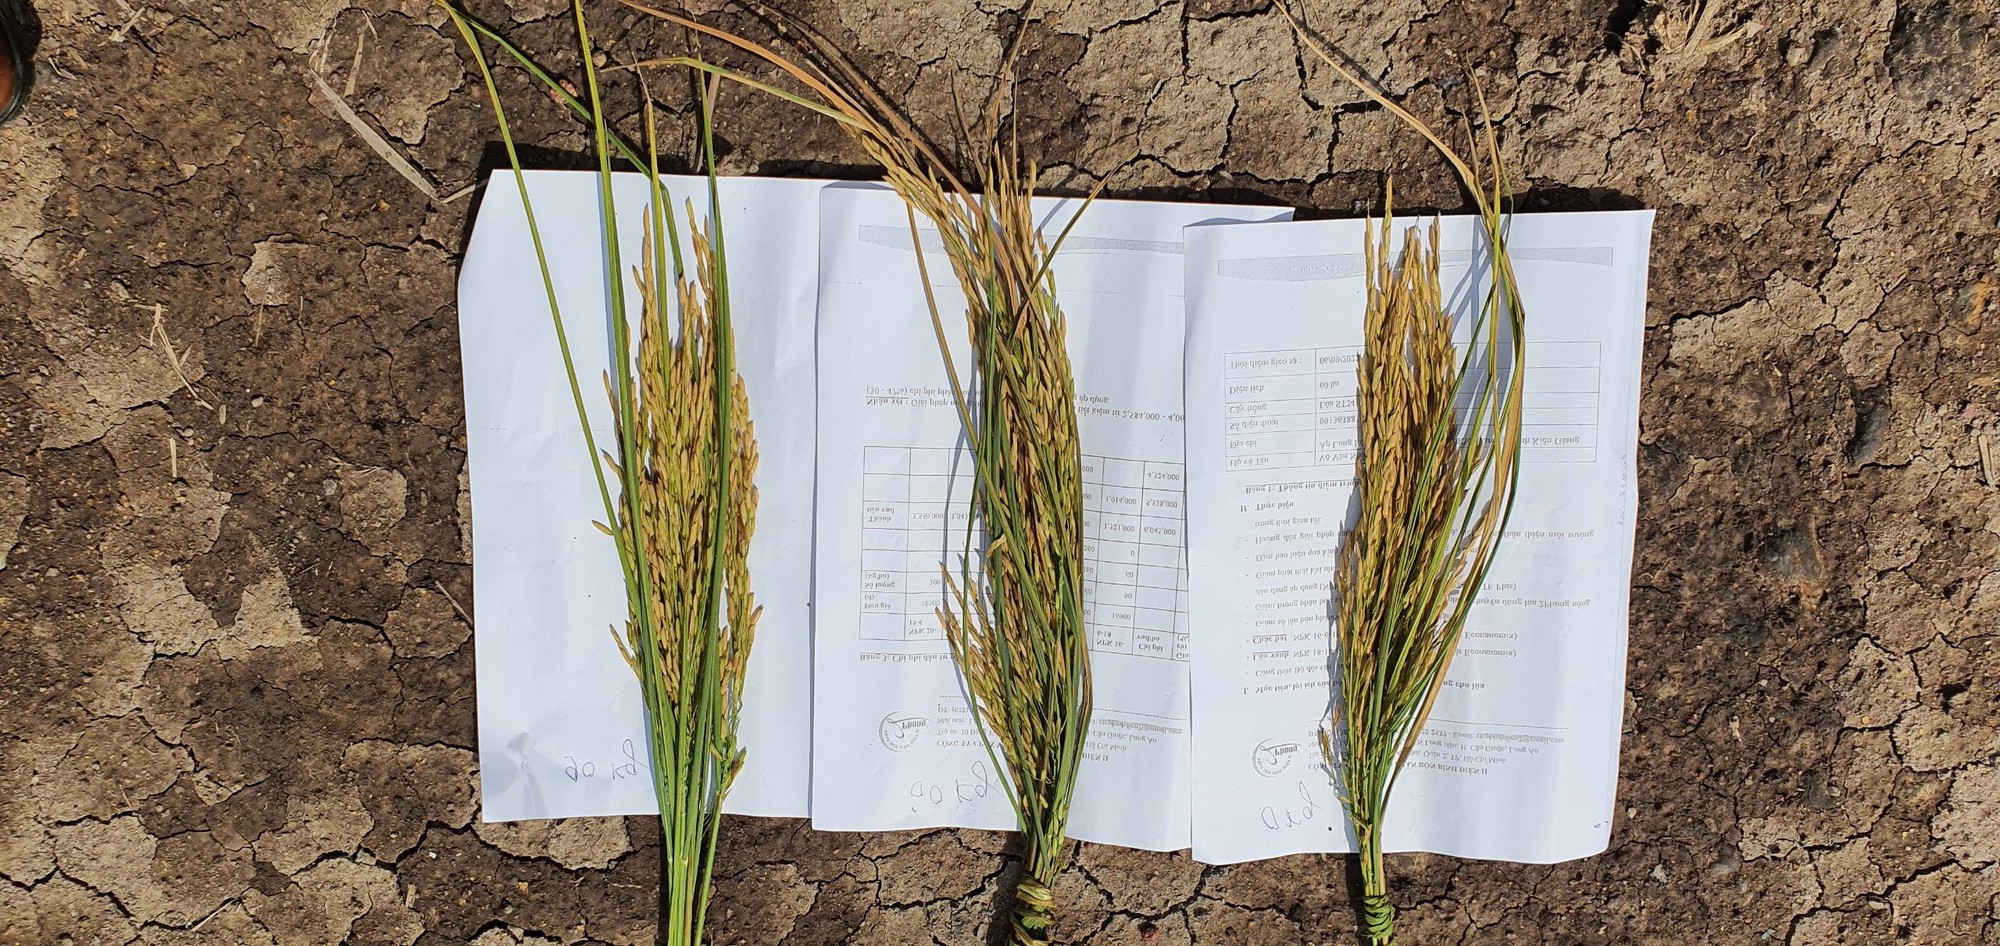 Phân bón NPK hữu cơ thế hệ mới mang lại hiệu quả cao trên cây lúa - Ảnh 3.